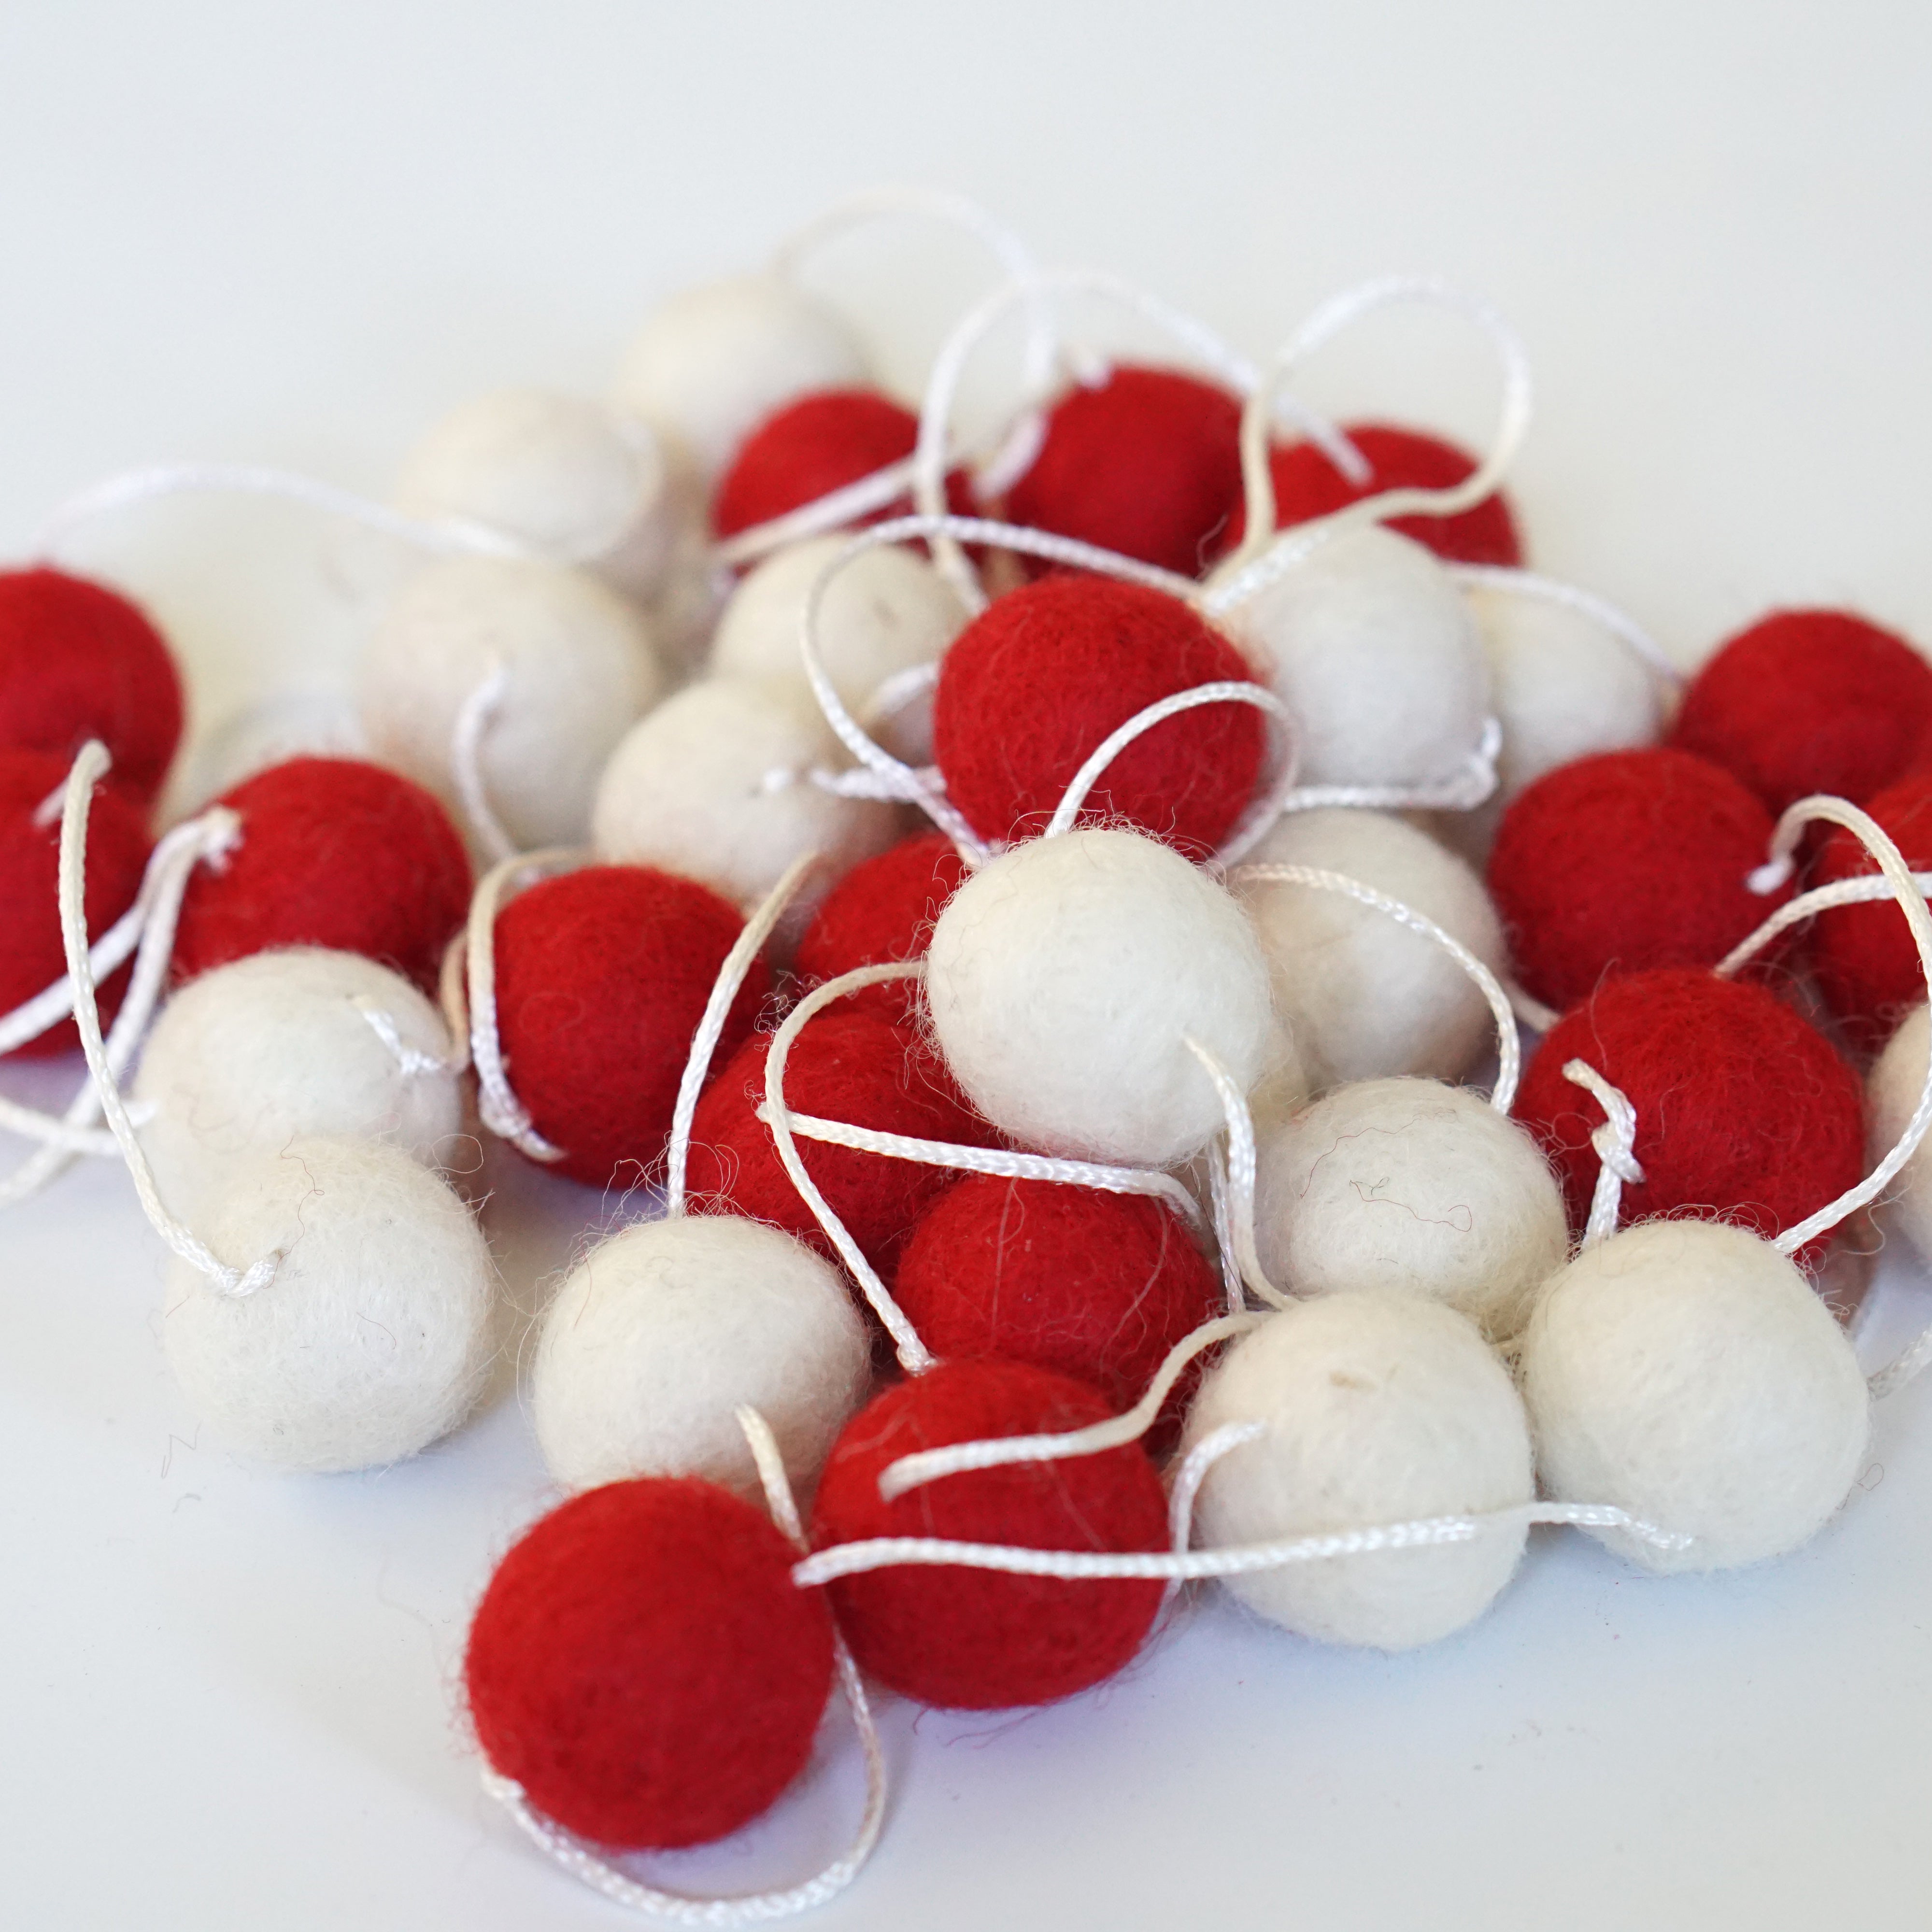 Buy Wool Felt Ball Red & White Wreath - Felt and Yarn